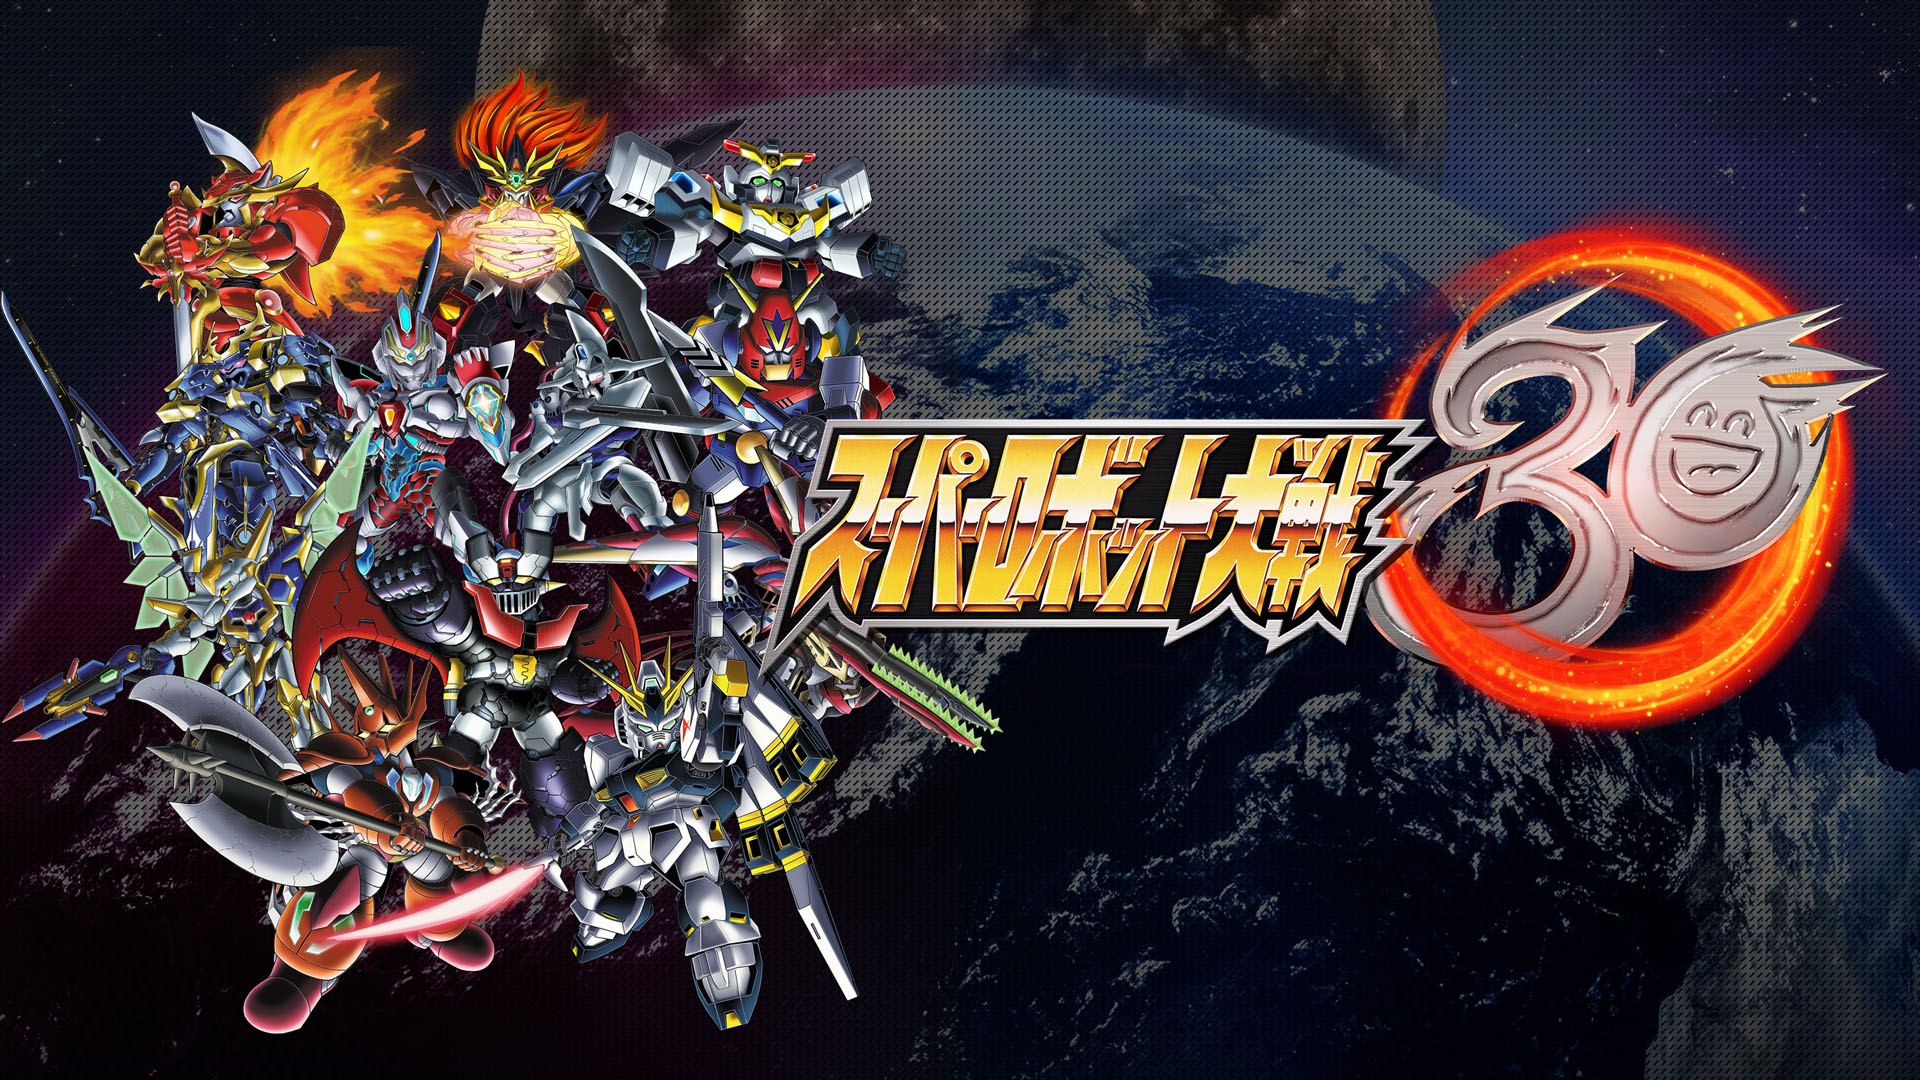 Super Robot Wars 30 Full Game Free Version PS4 Crack Setup Download